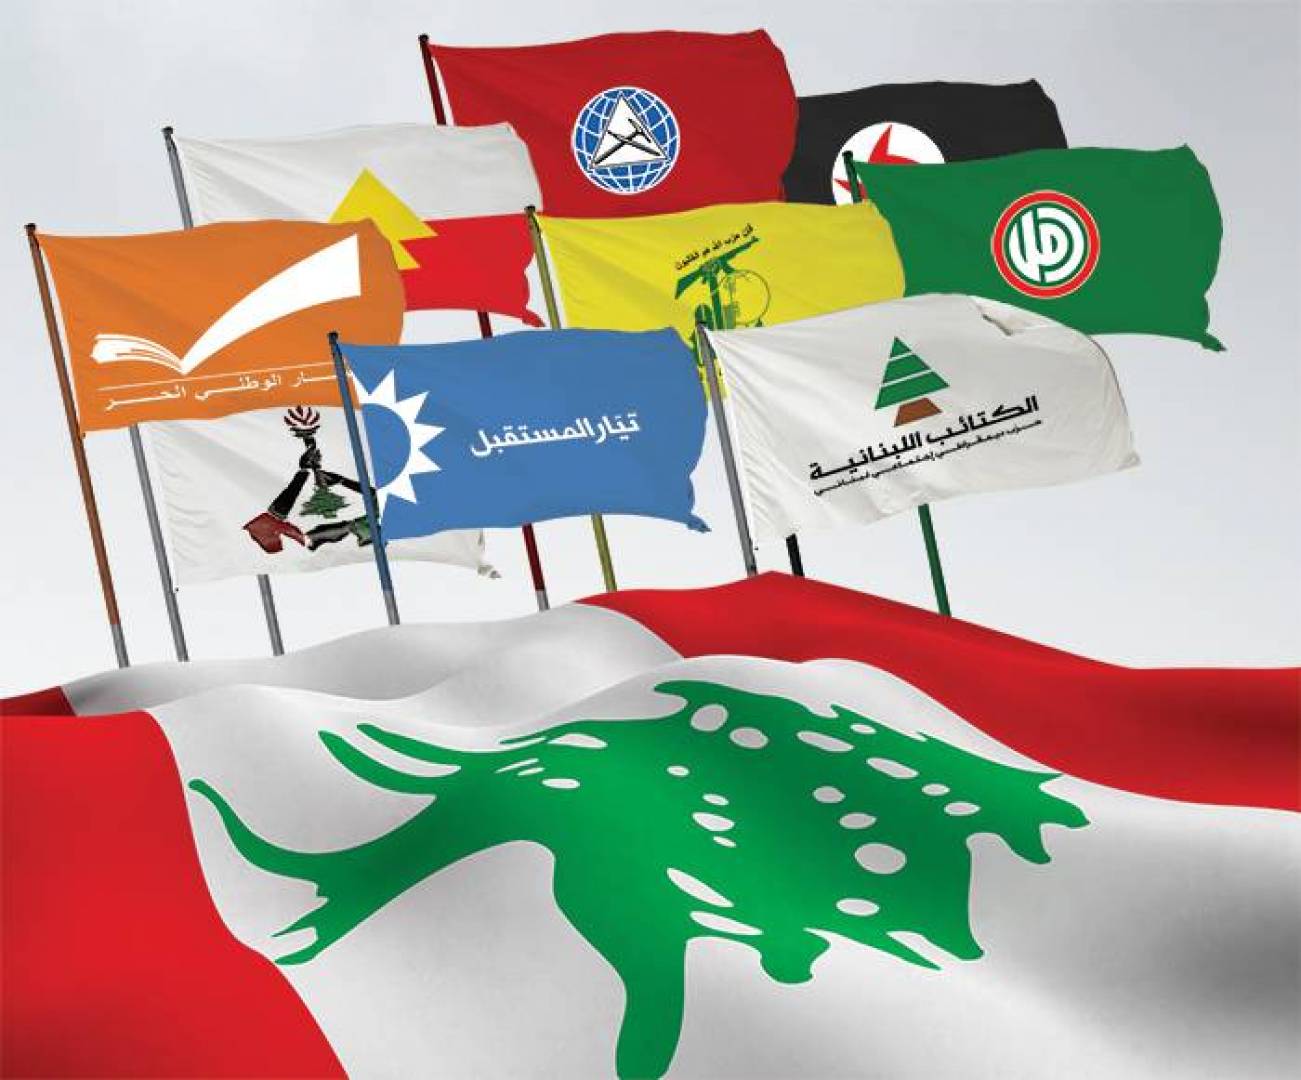 كتب الأستاذ حليم خاتون: في لبنان، من يكون صوت الذين لا صوت لهم؟